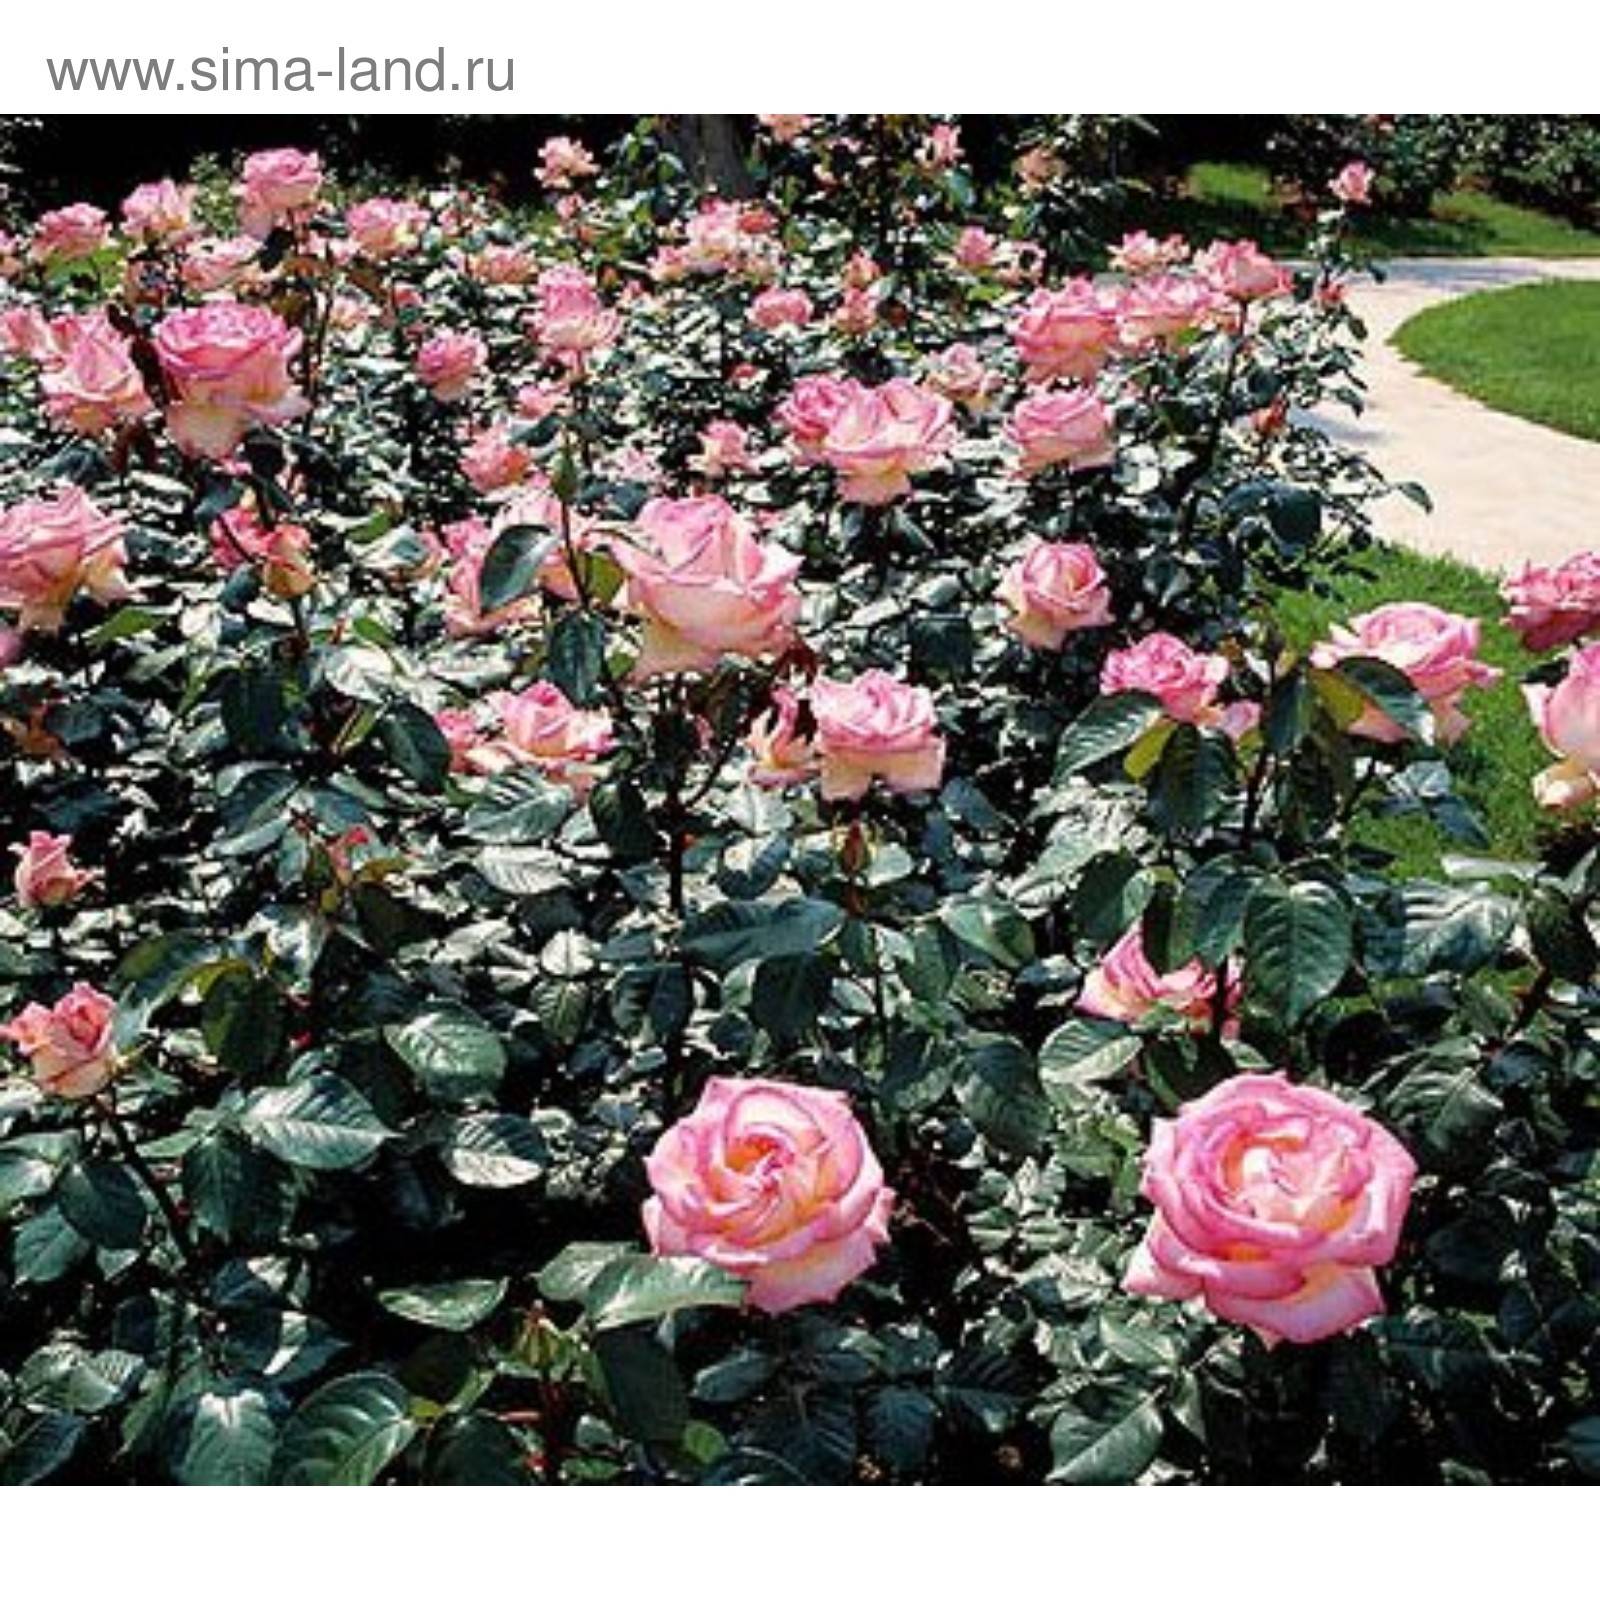 Роза принц монако: флорибунда с градиентной окраской лепестков